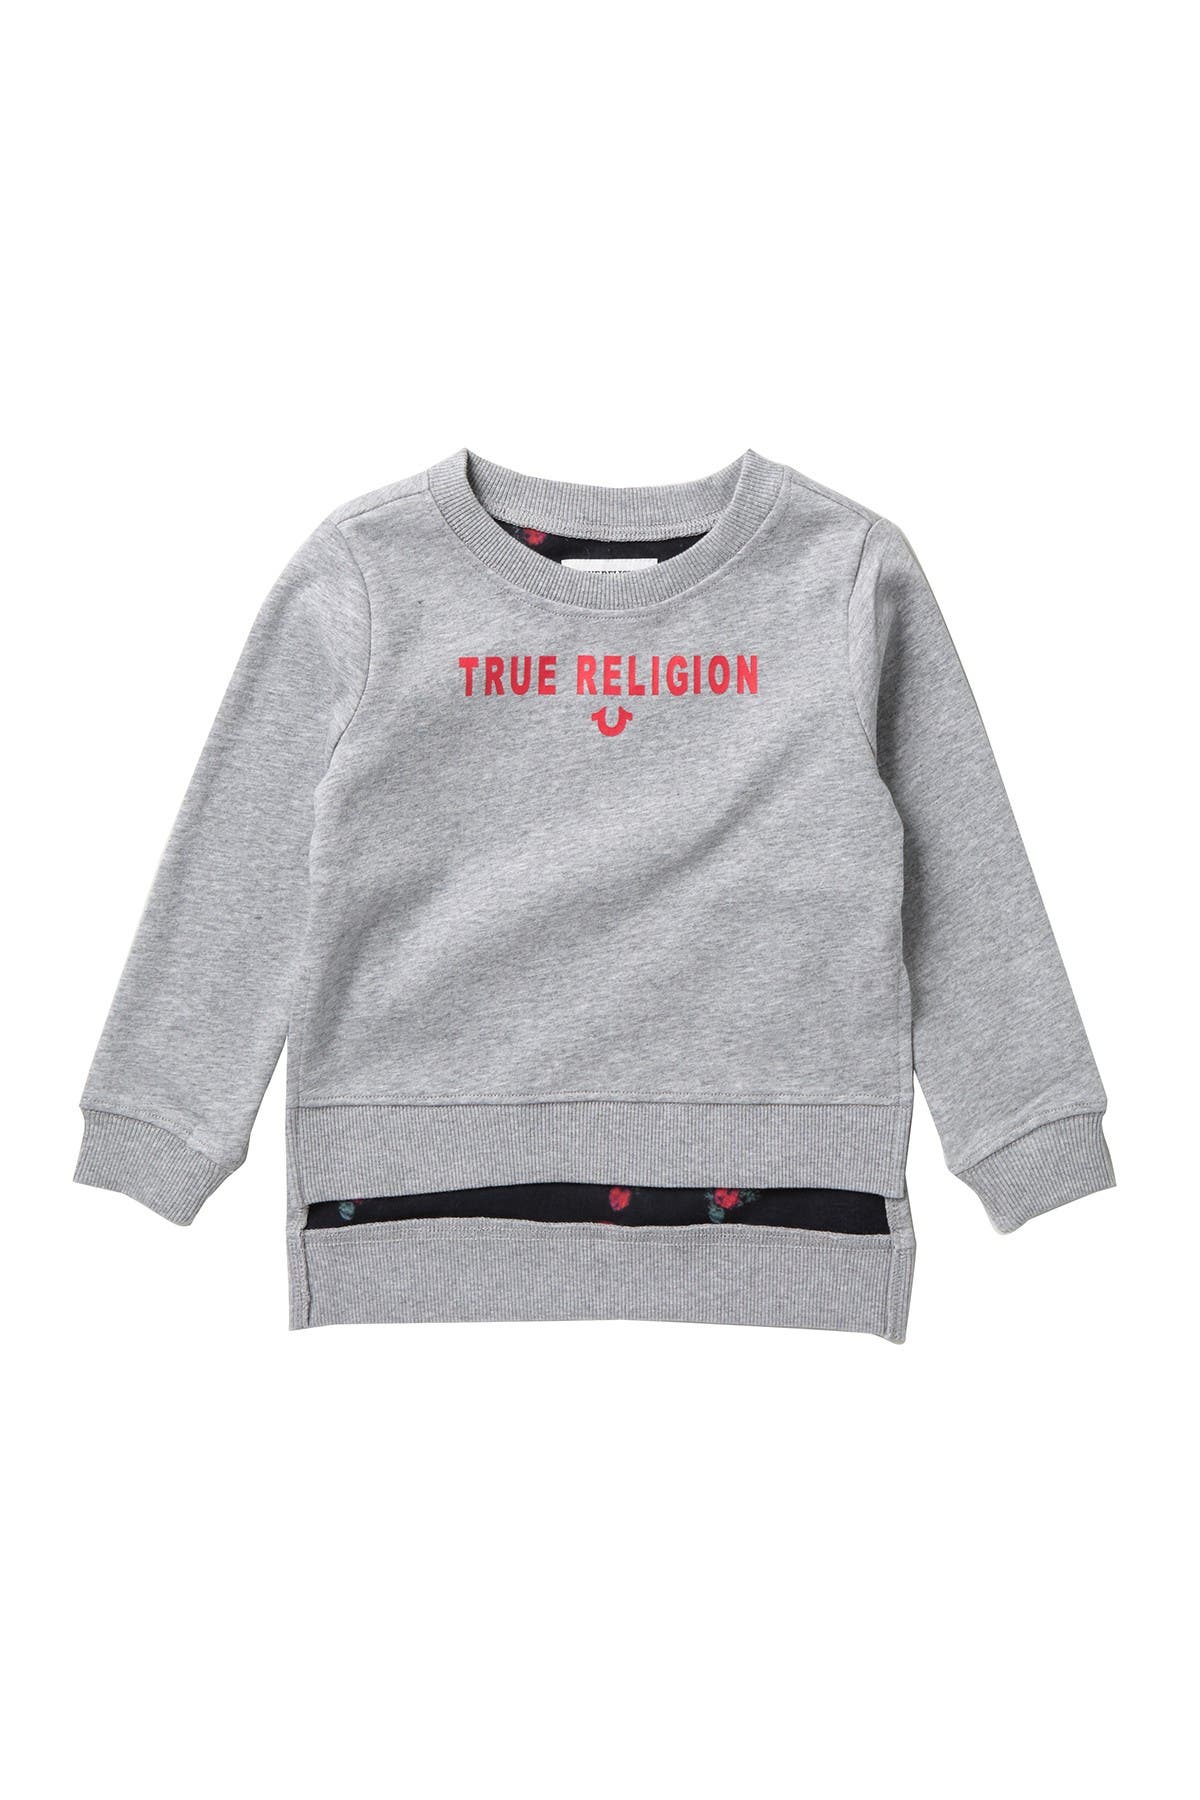 true religion white sweater